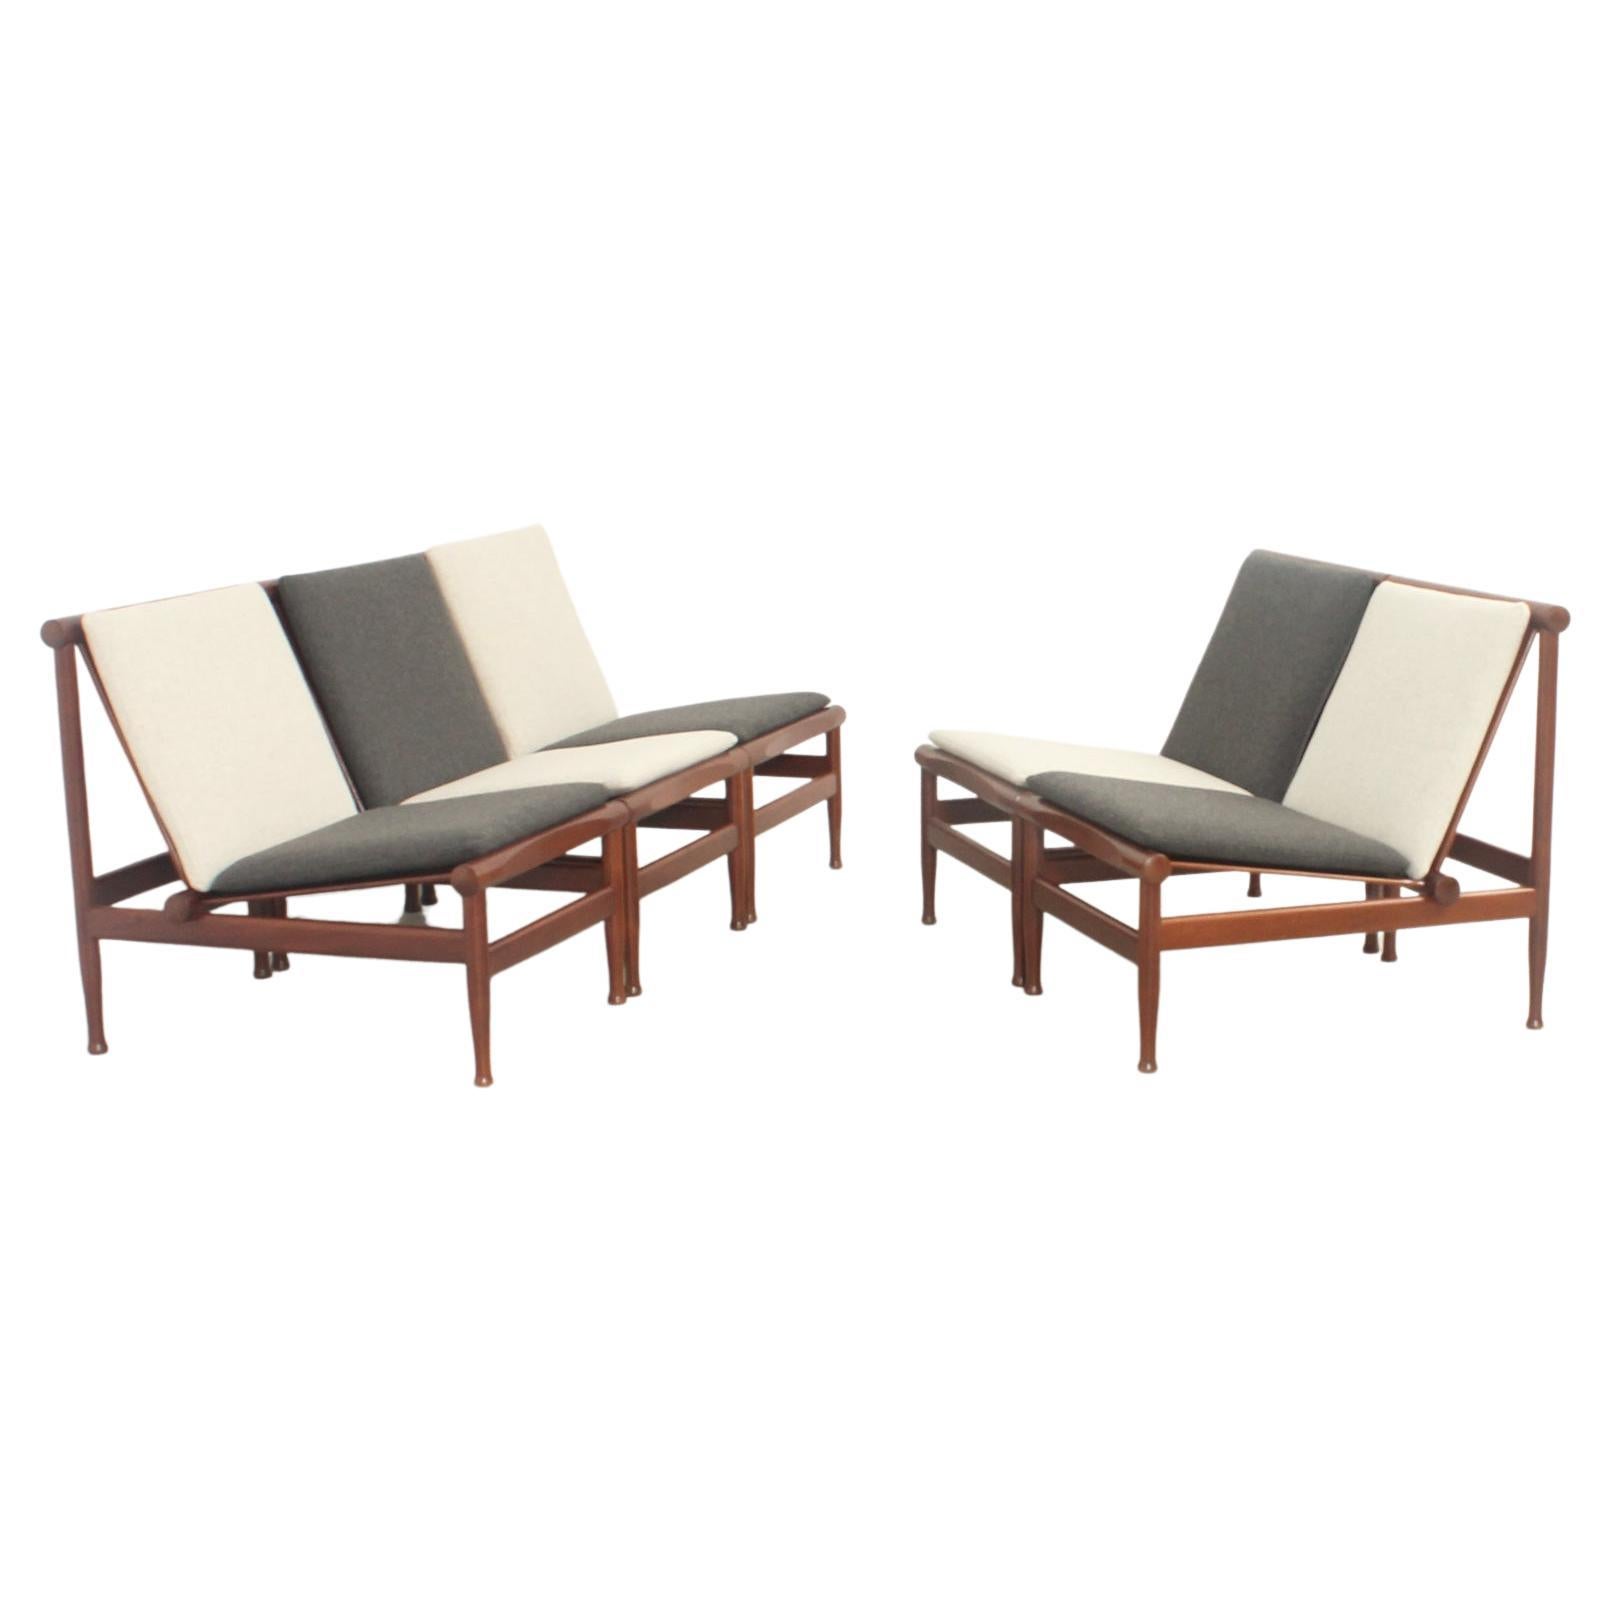 Japan Easy Chairs by Kai Lyngfeldt Larsen for Søborg, Denmark, 1950's For Sale